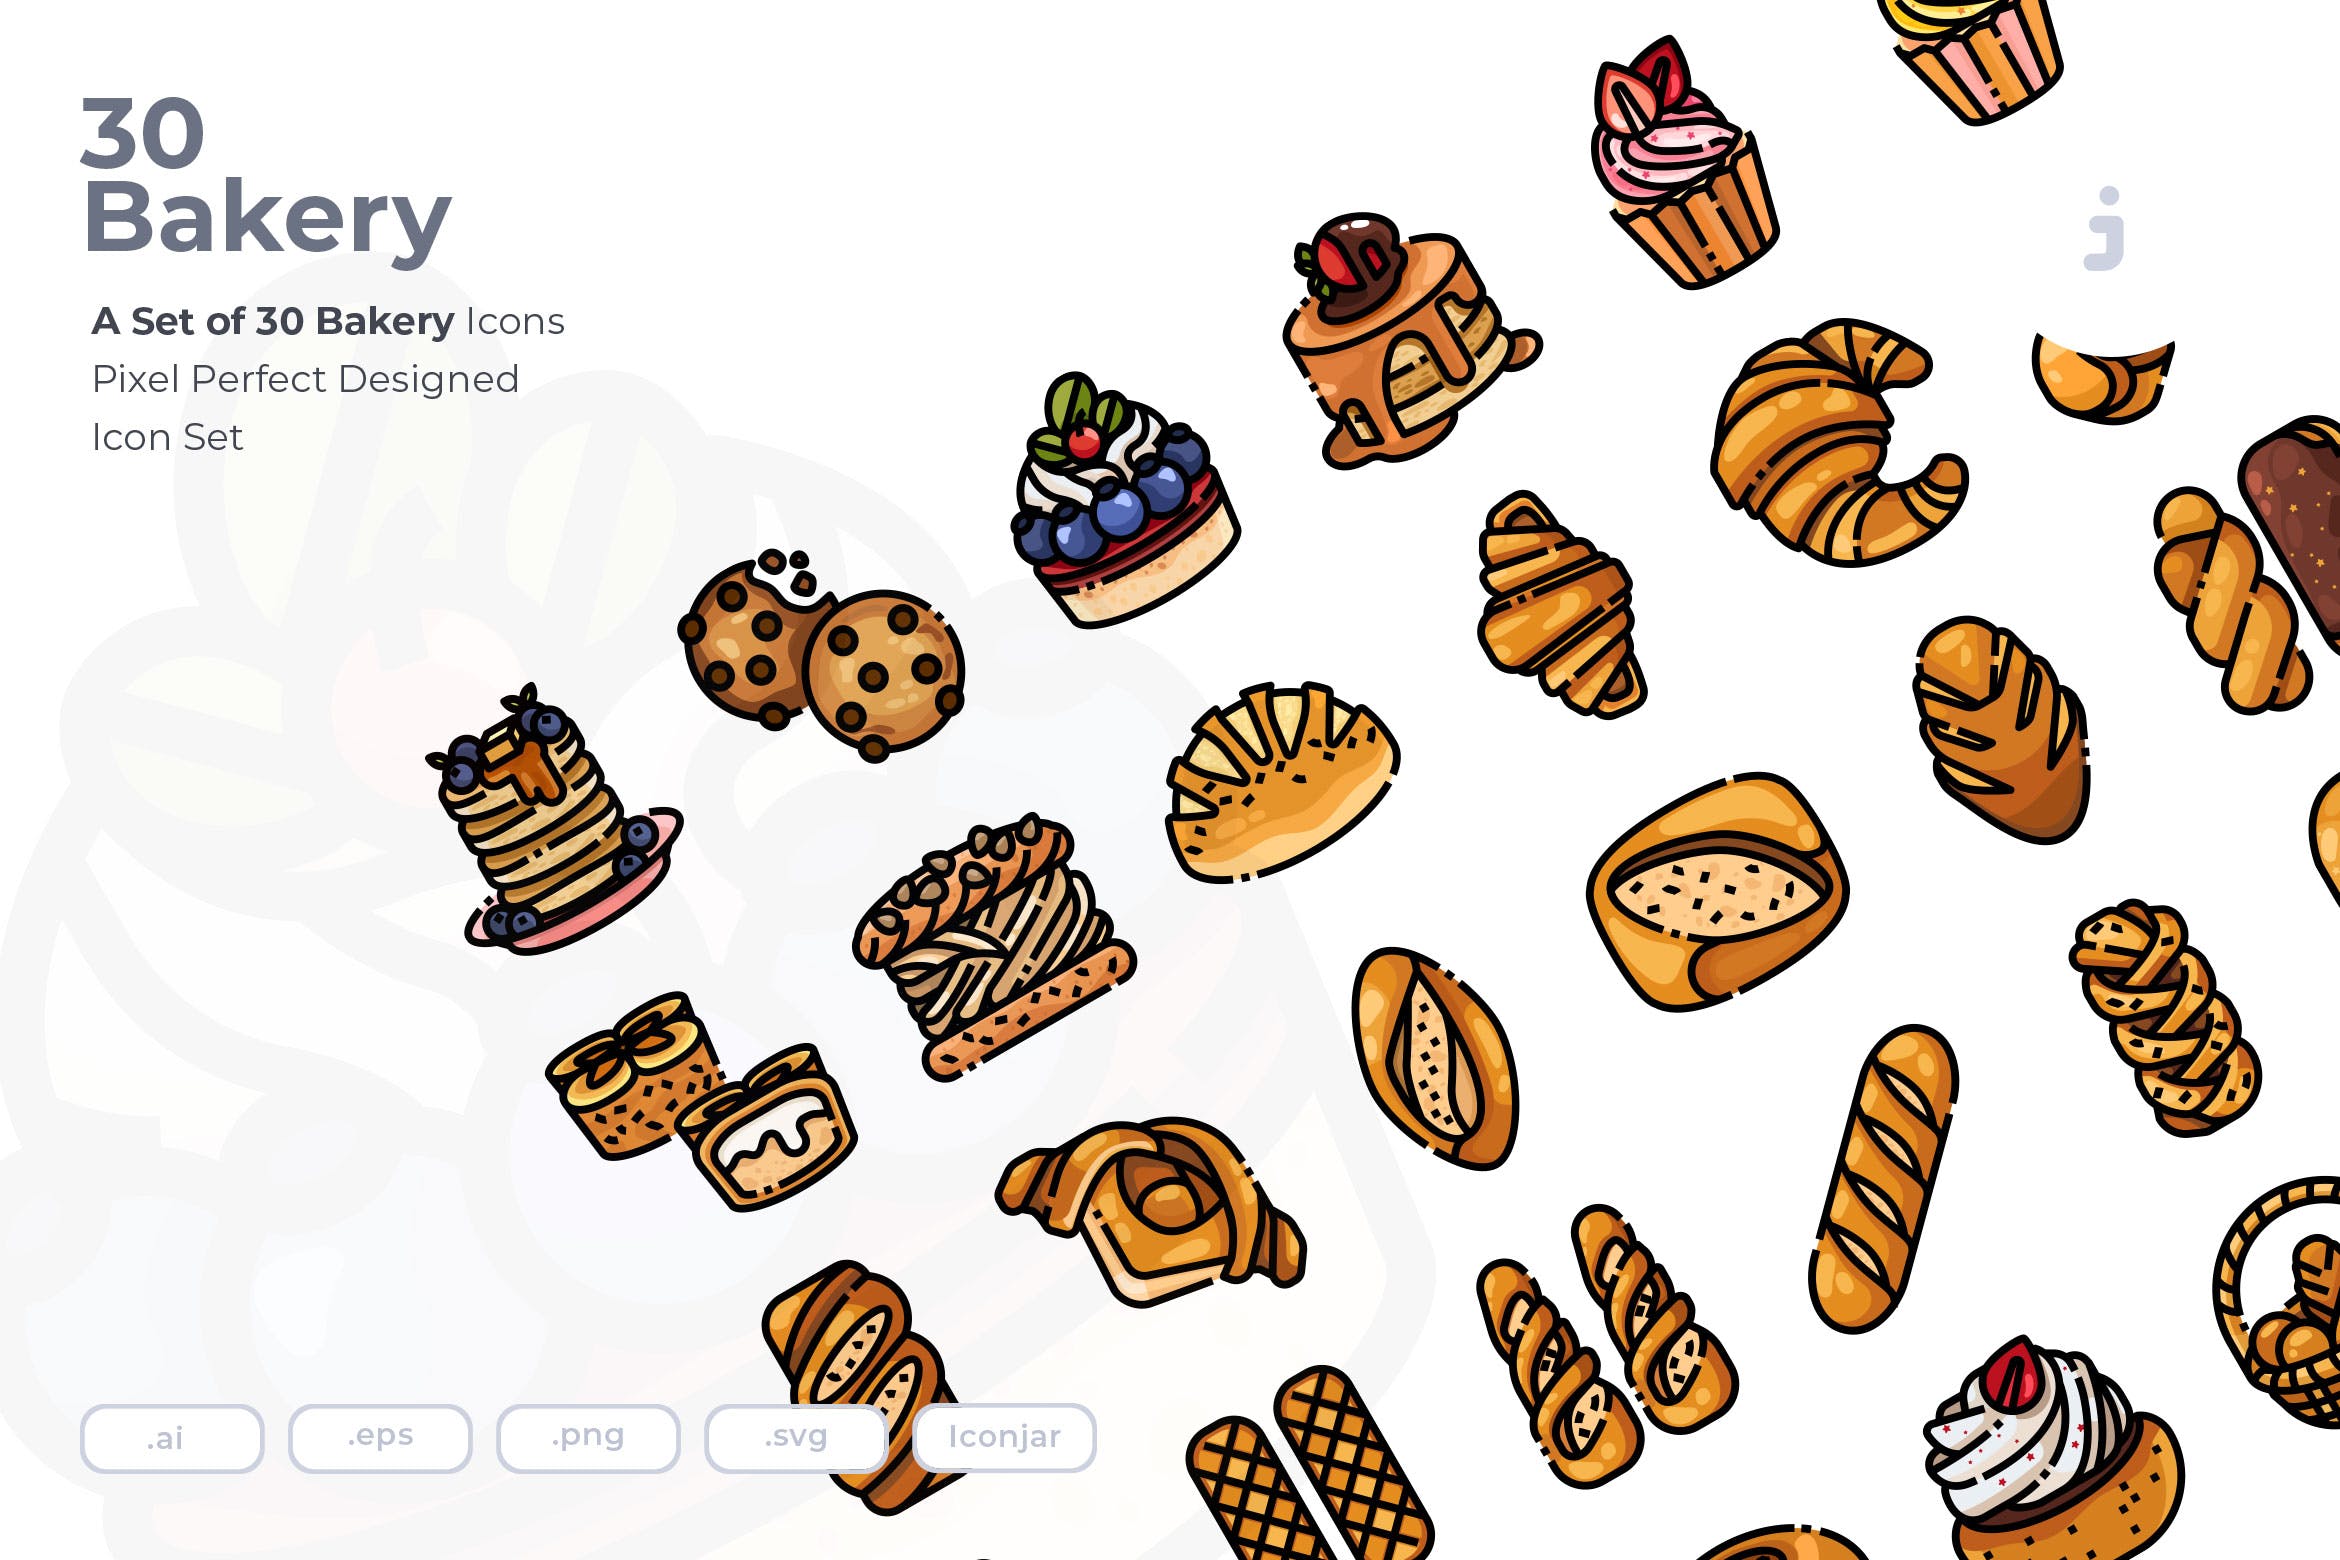  30个面包房元素描边风图标源文件下载30 Bakery Icons Uf6jcgn